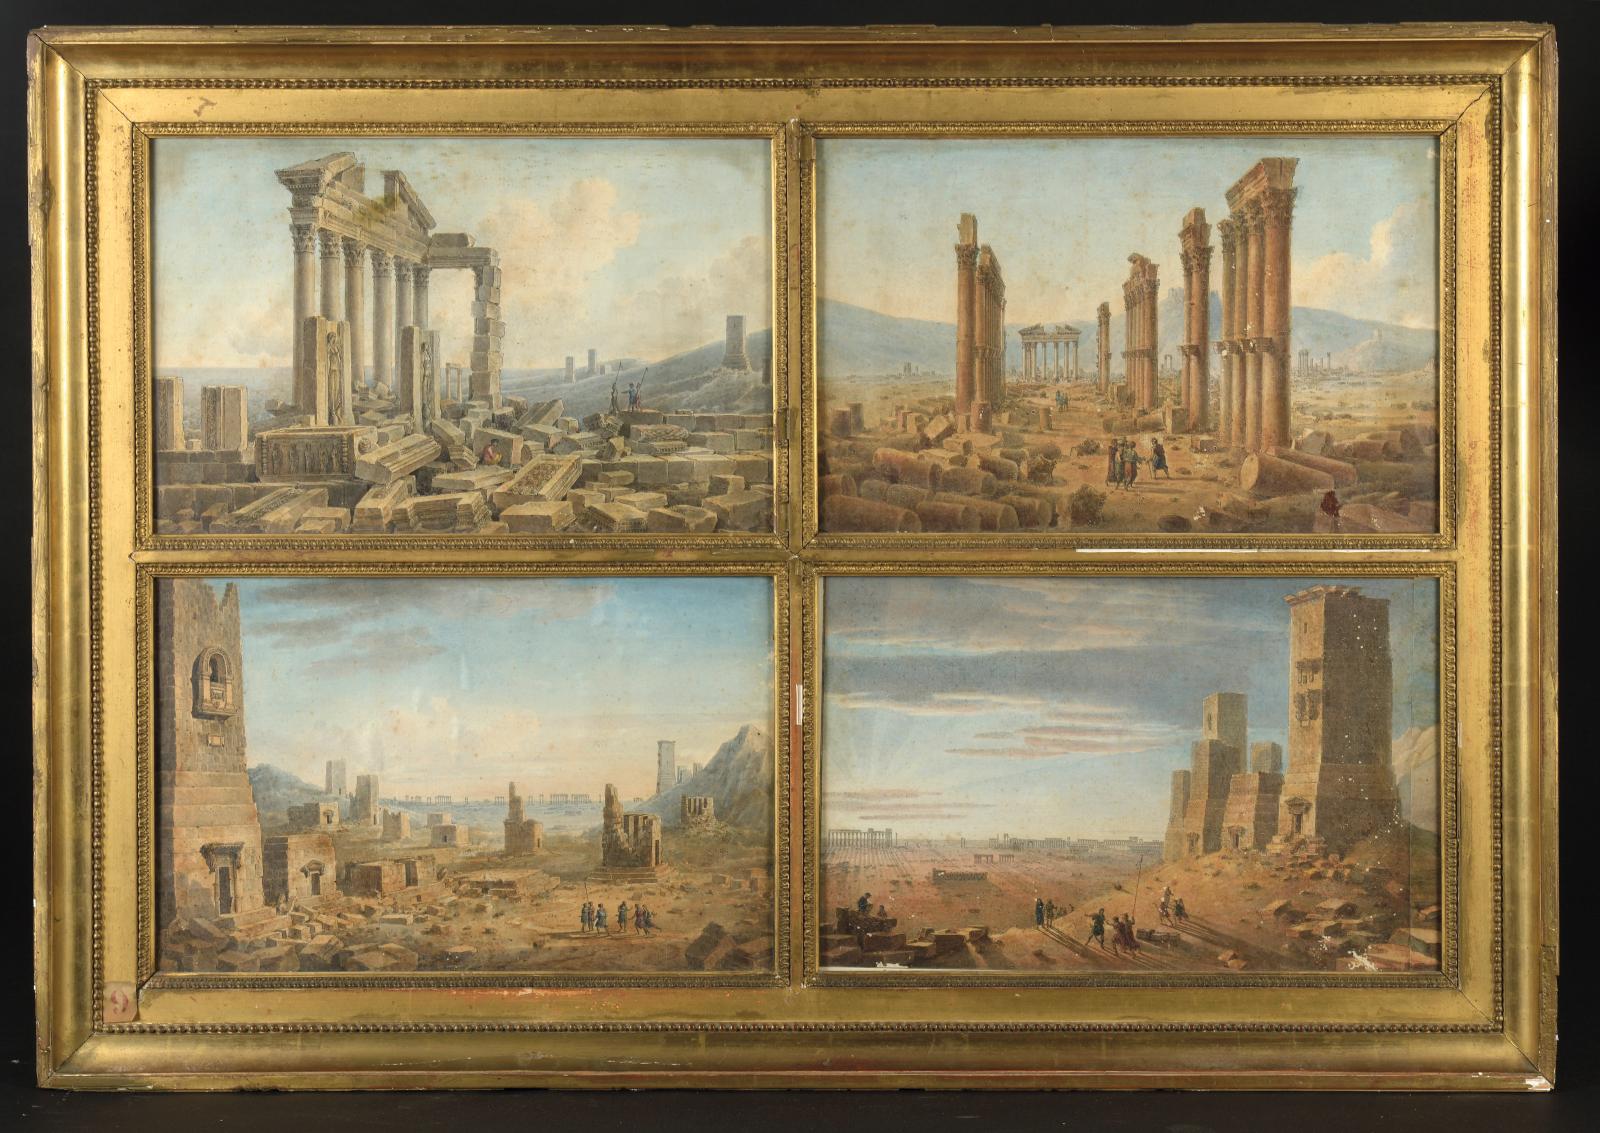 Palmyre renaît grâce  à Louis François Cassas